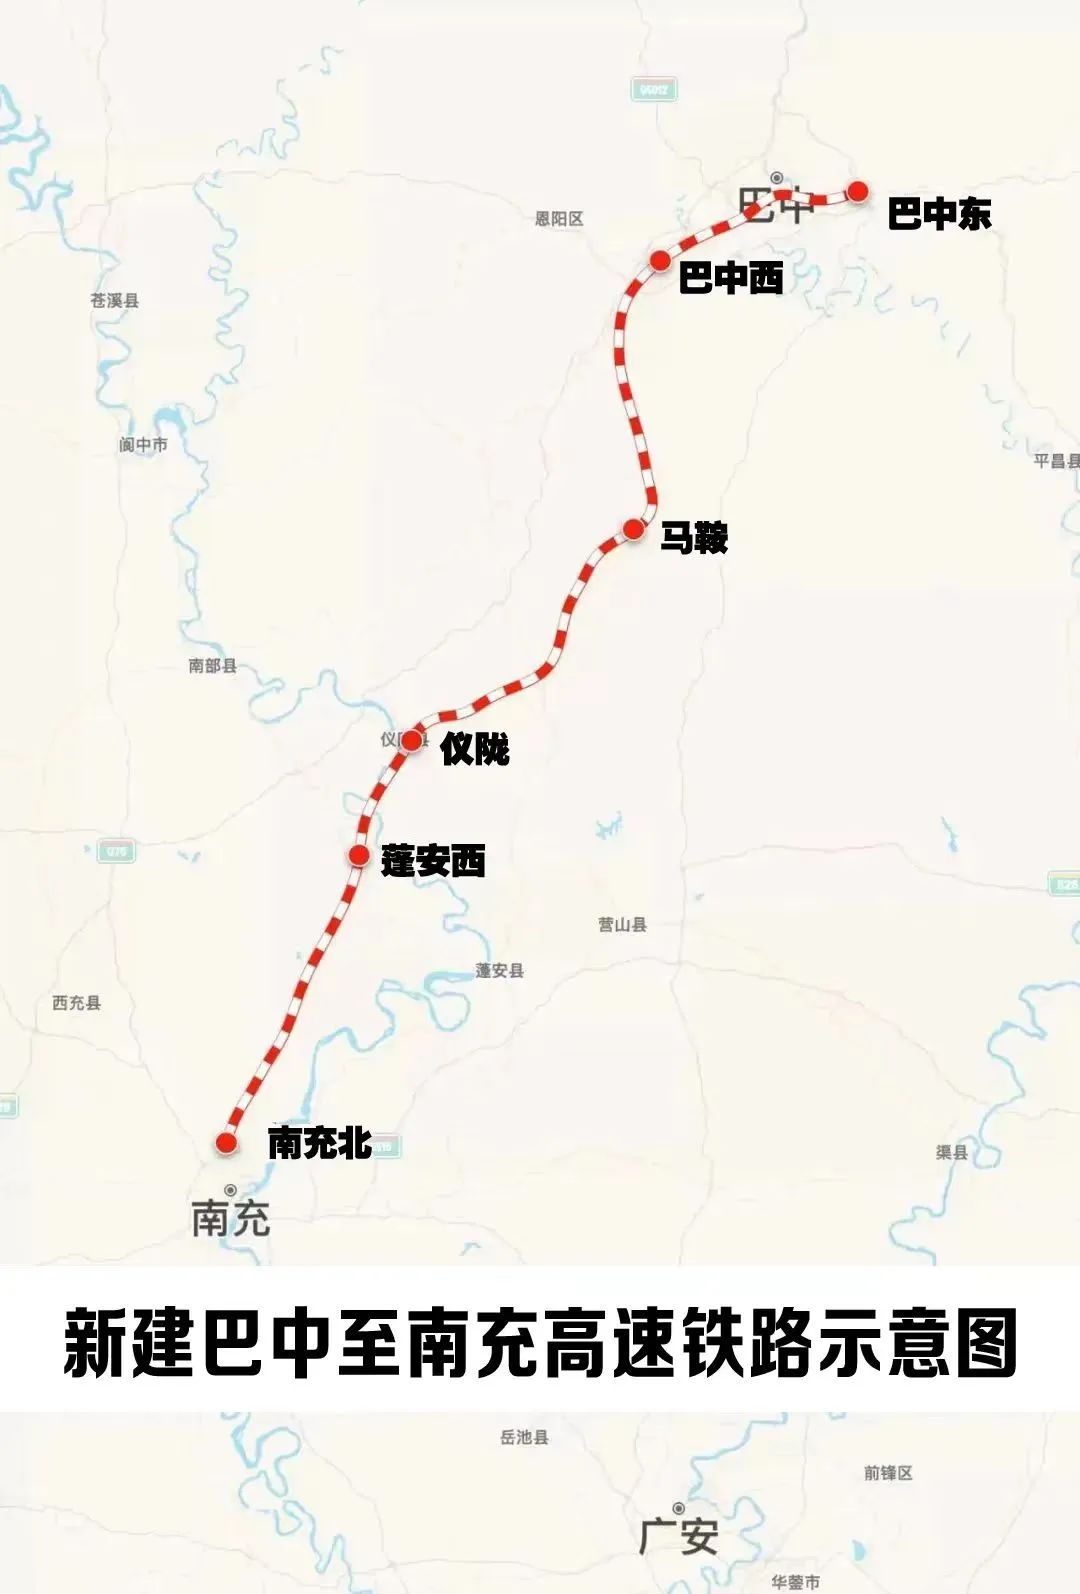 上新,川渝黔多条铁路刷新建设进度条